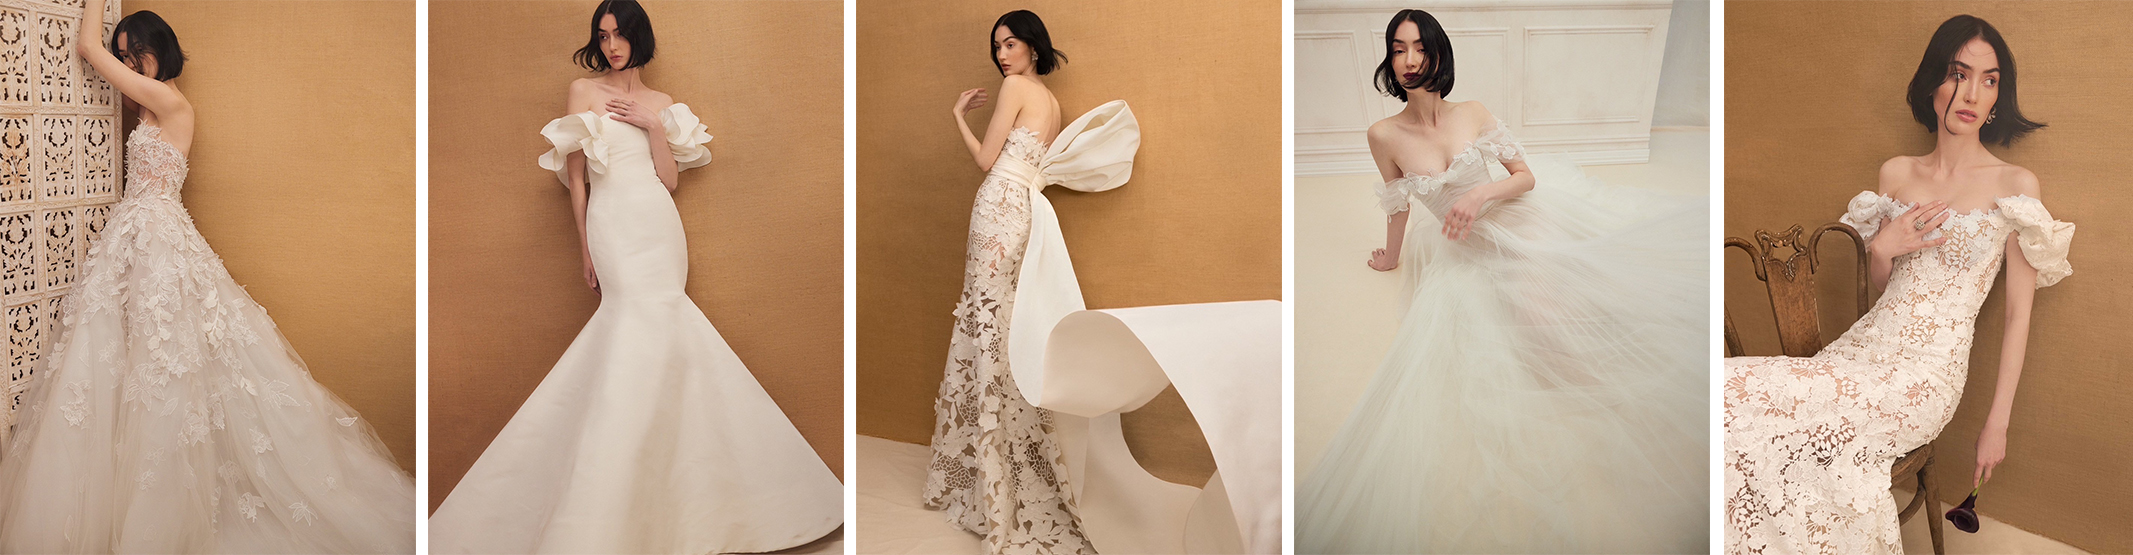 Oscar de la Rentaの新作ウェディングドレスが集うポップアップイベントTHE TREAT DRESSINGにて開催します